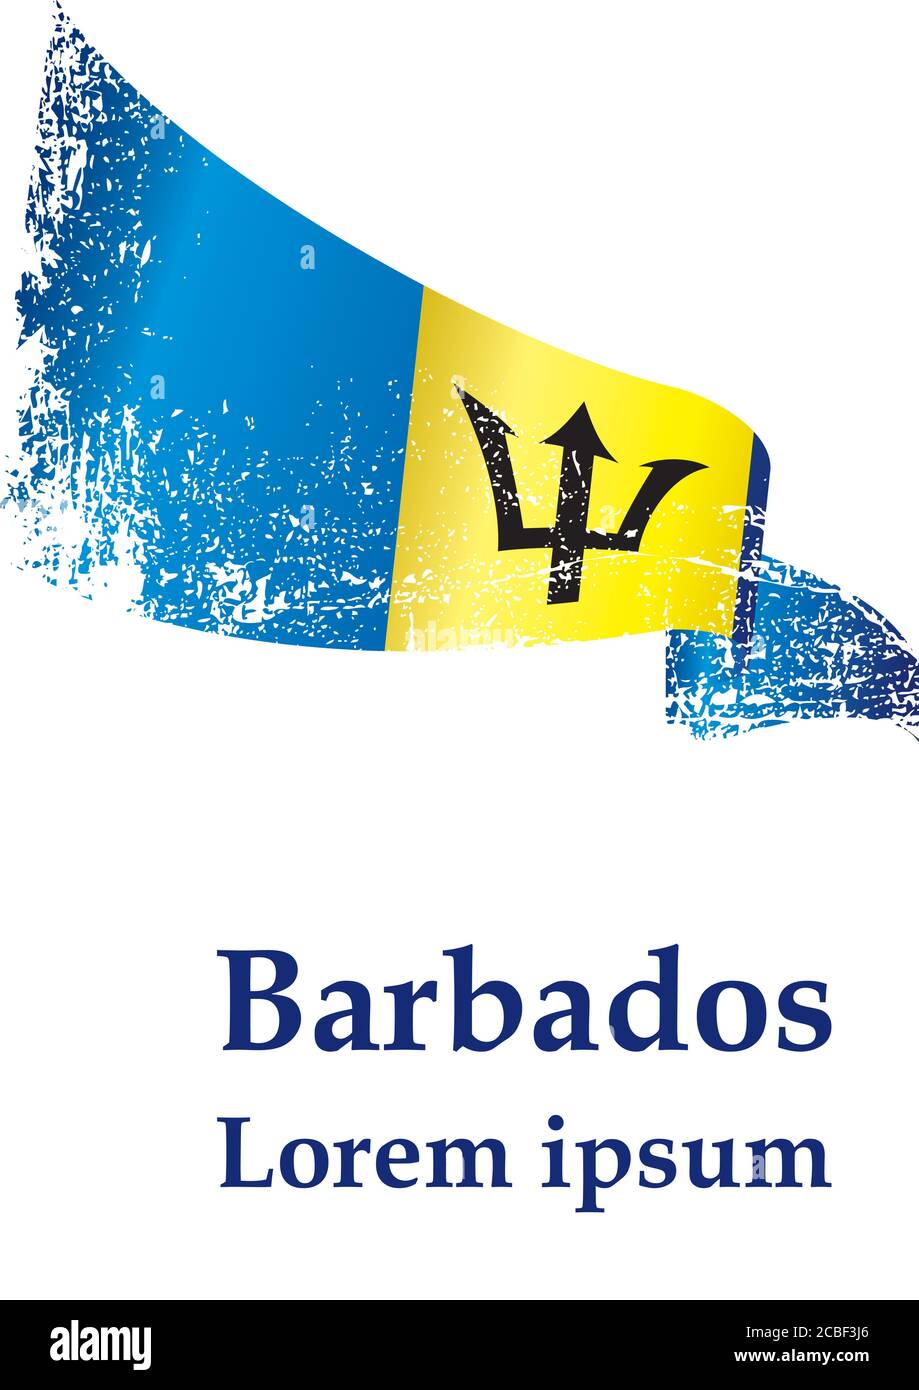 Bandera de Barbados, Barbados. Plantilla para el diseño de premios, un documento oficial con la bandera de Barbados. Ilustración vectorial brillante y colorida. Ilustración del Vector